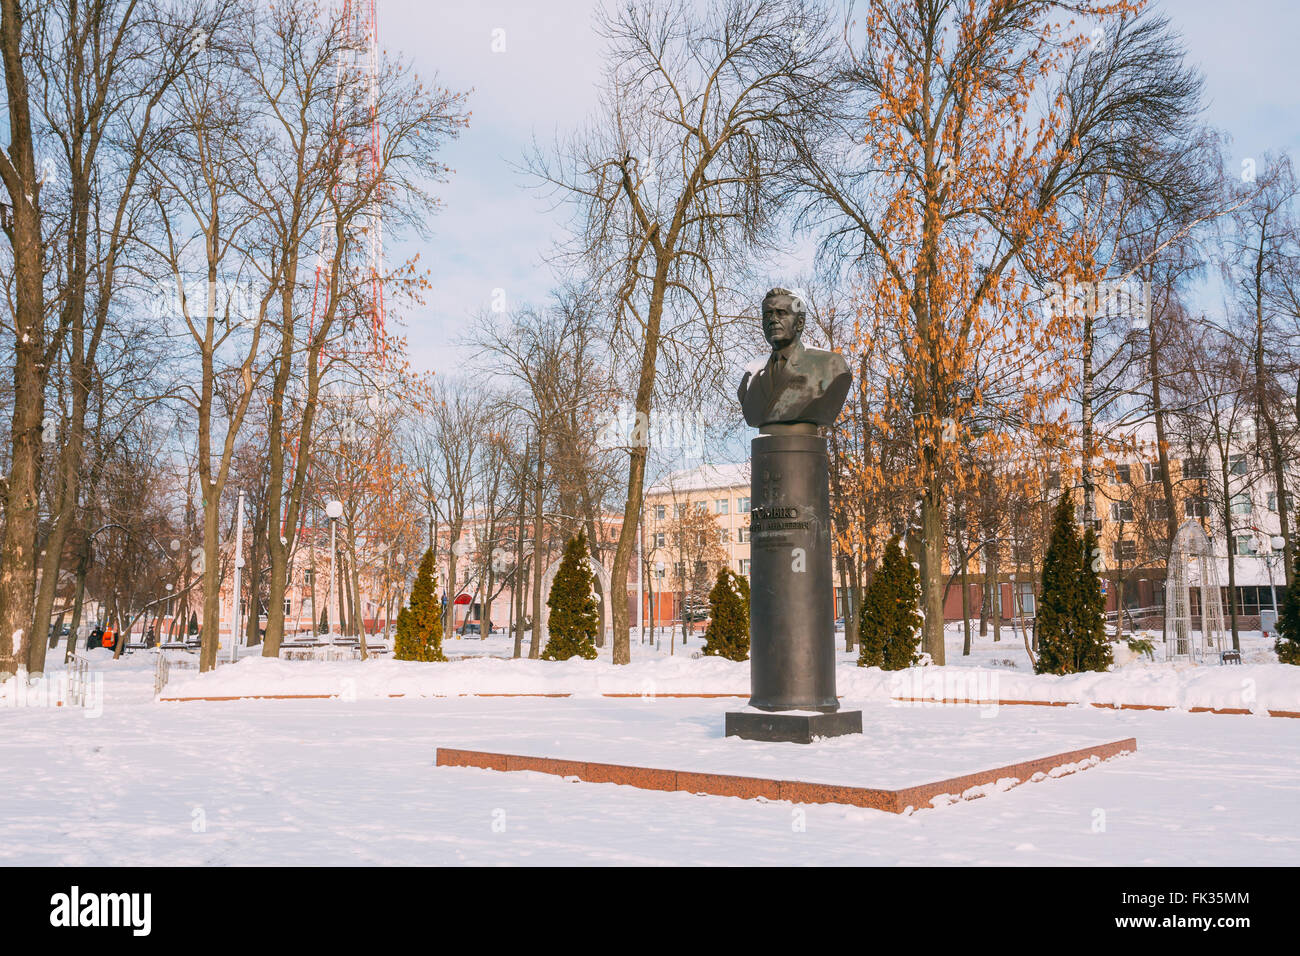 Gomel, Bélarus - 23 janvier 2016 : Monument de Gromyko à Gomel, au Bélarus. Andrei Gromyko (1909-1989) était un homme d'État soviétique duri Banque D'Images